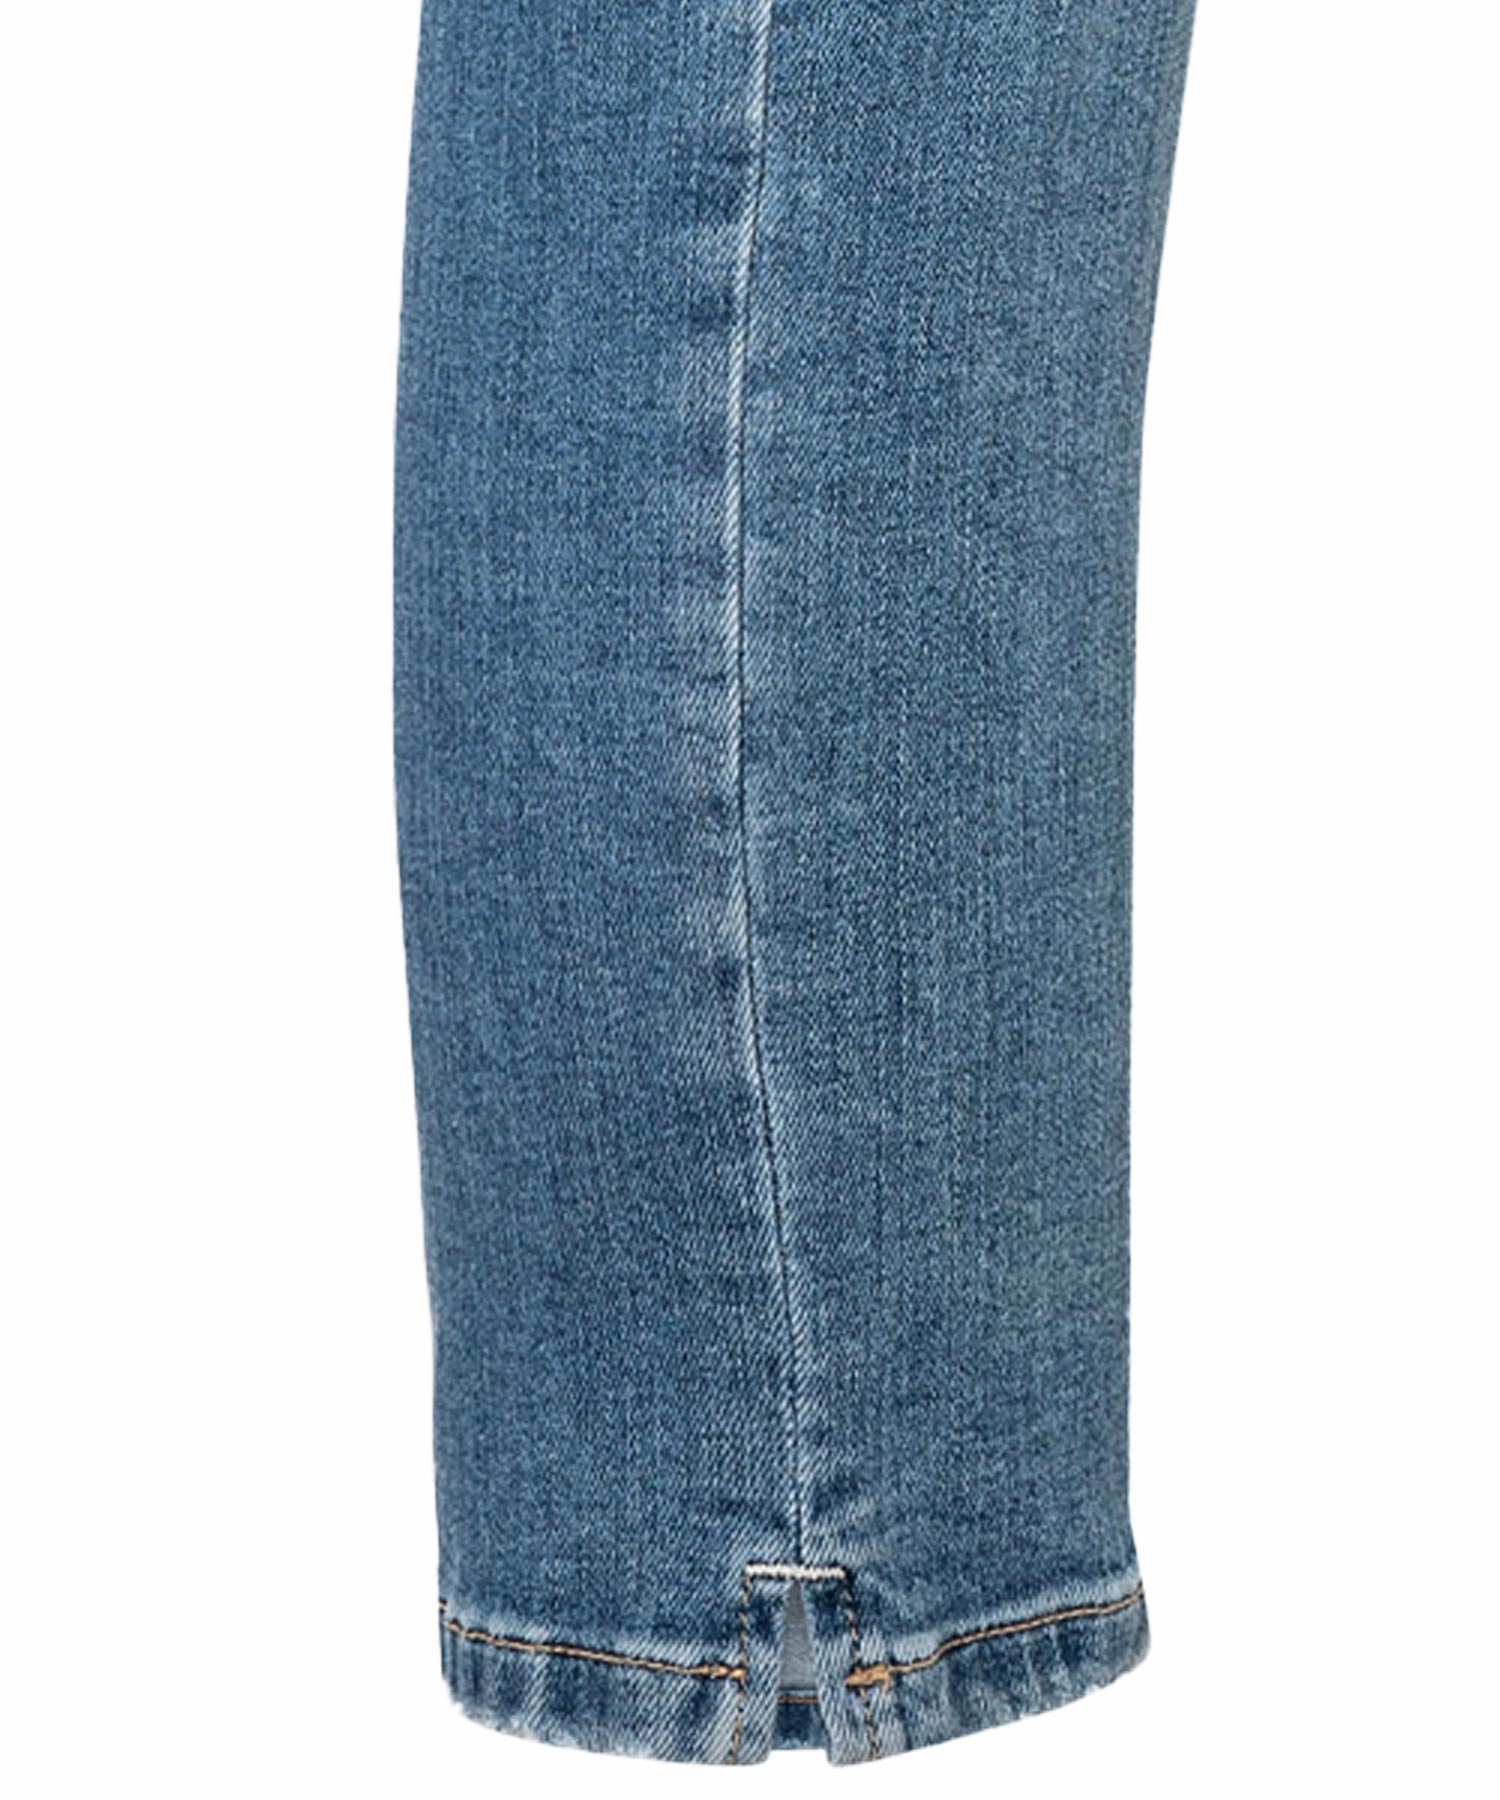 Jeans Piper short von Cambio in mittelblauer Waschung